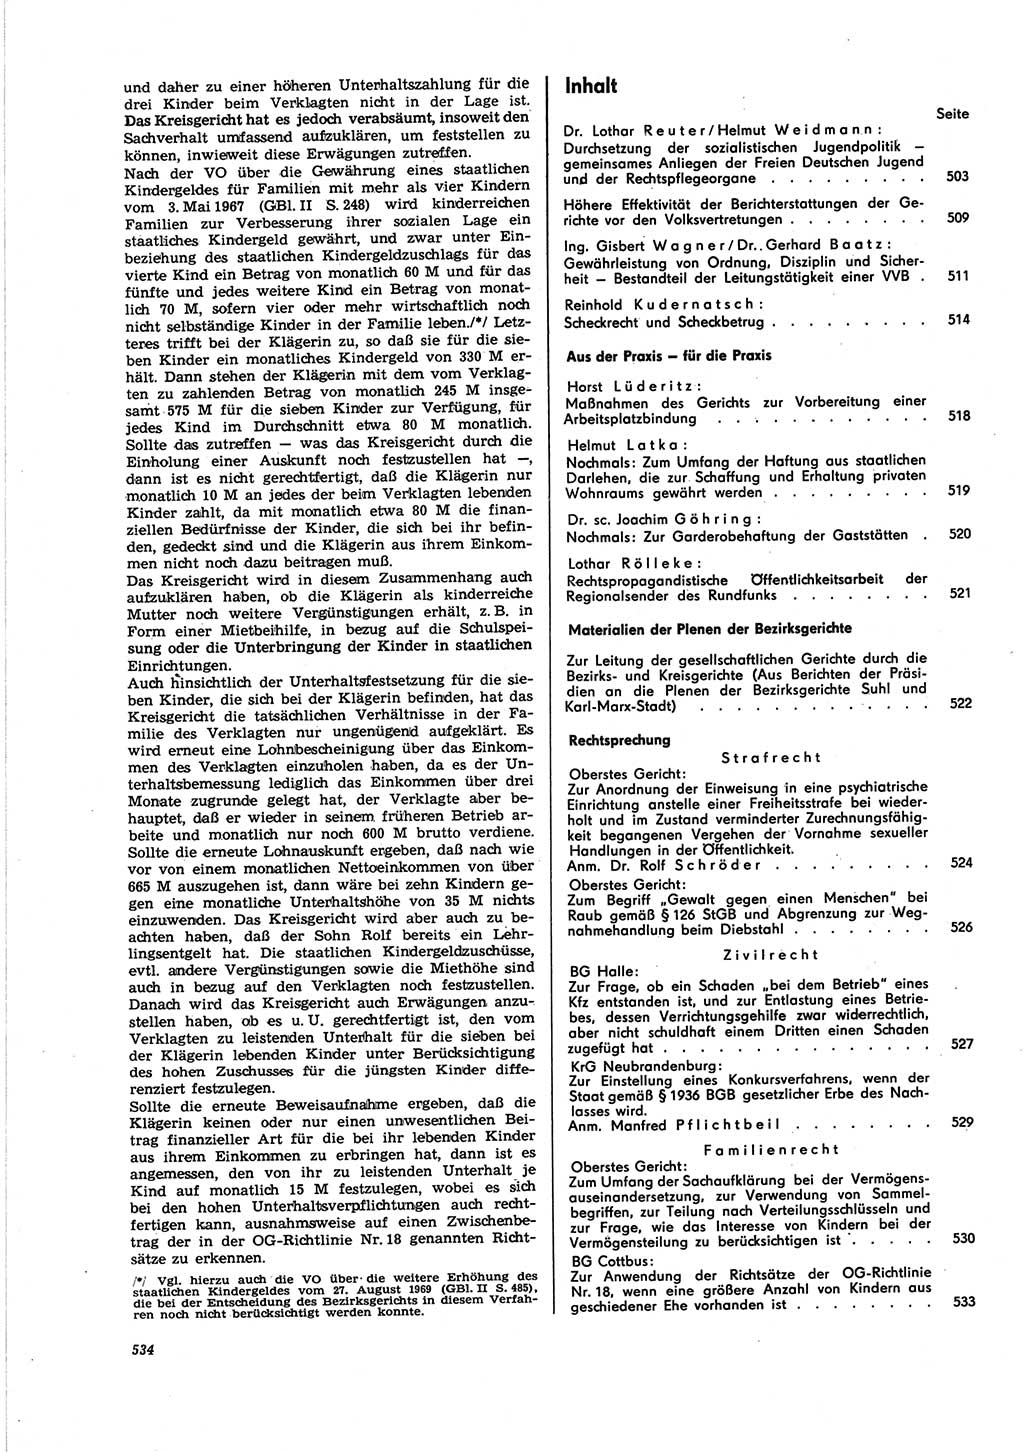 Neue Justiz (NJ), Zeitschrift für Recht und Rechtswissenschaft [Deutsche Demokratische Republik (DDR)], 25. Jahrgang 1971, Seite 534 (NJ DDR 1971, S. 534)